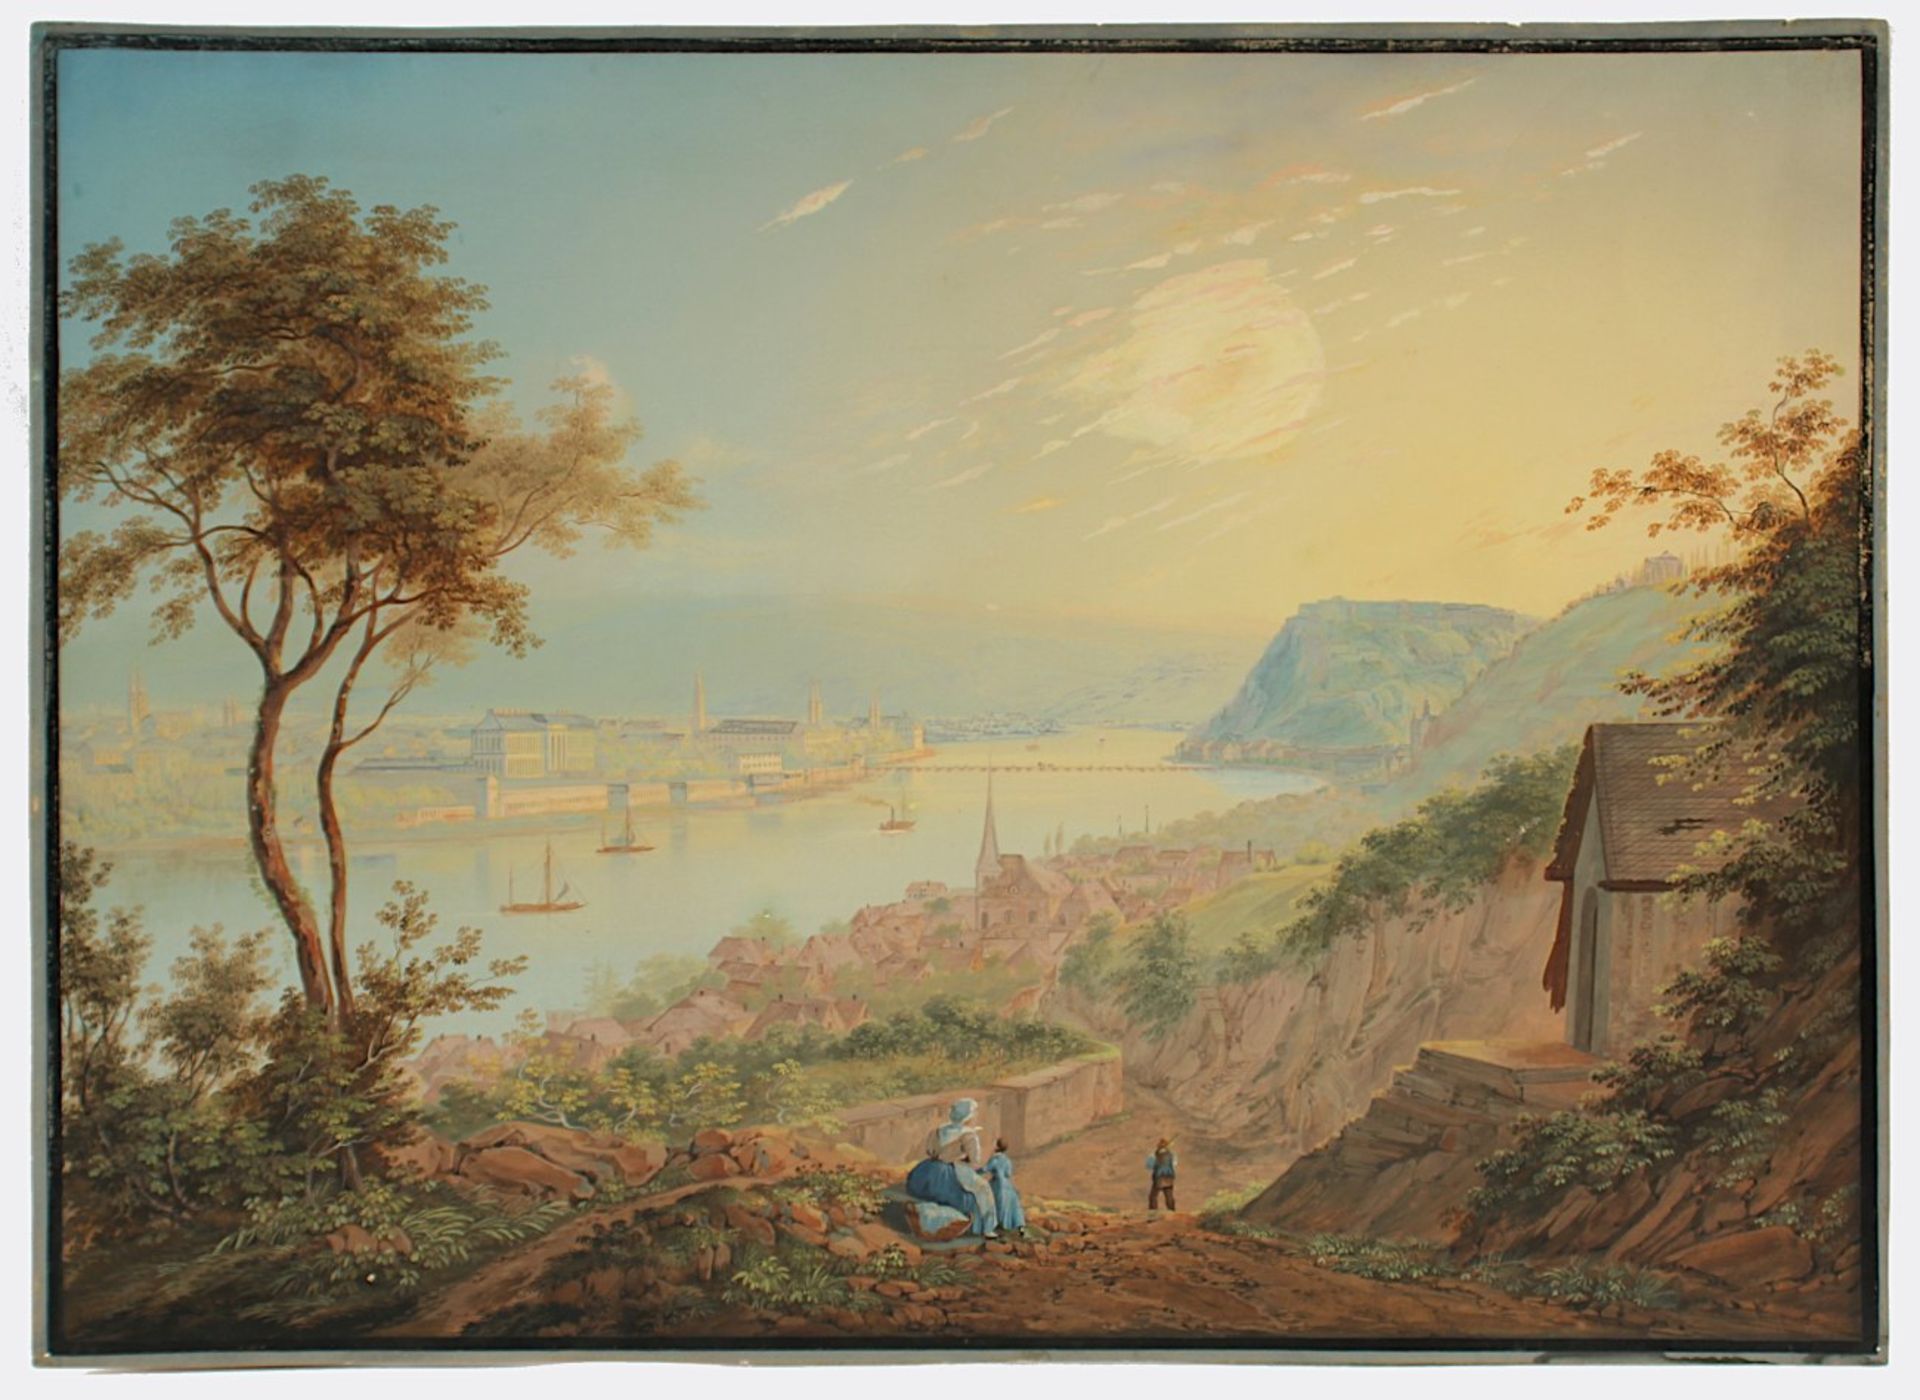 BLEULER, Johann Ludwig (1792-1850), zugeschrieben, "Panoramaansicht von Koblenz mit